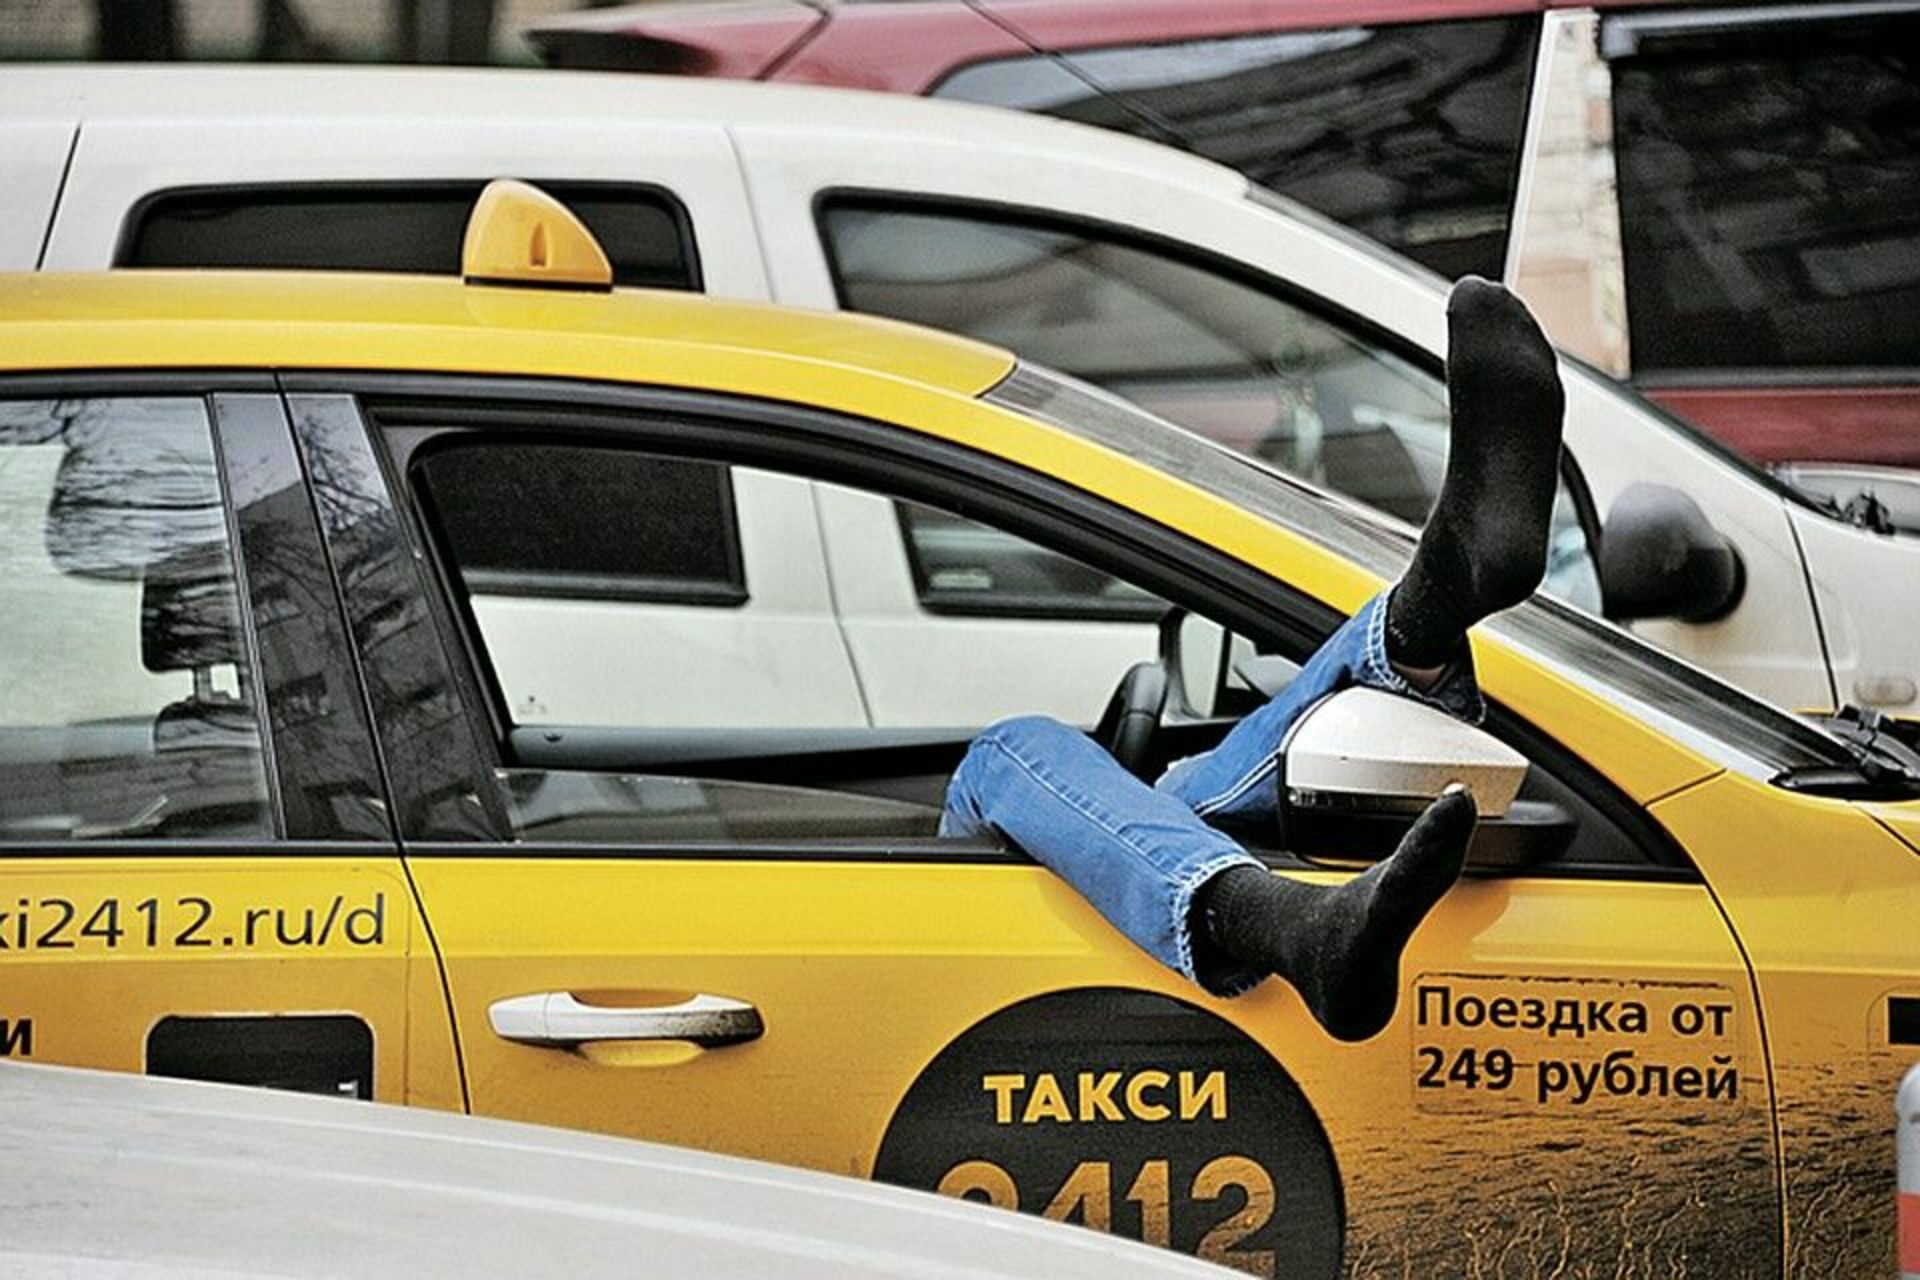 Реестр водителей такси